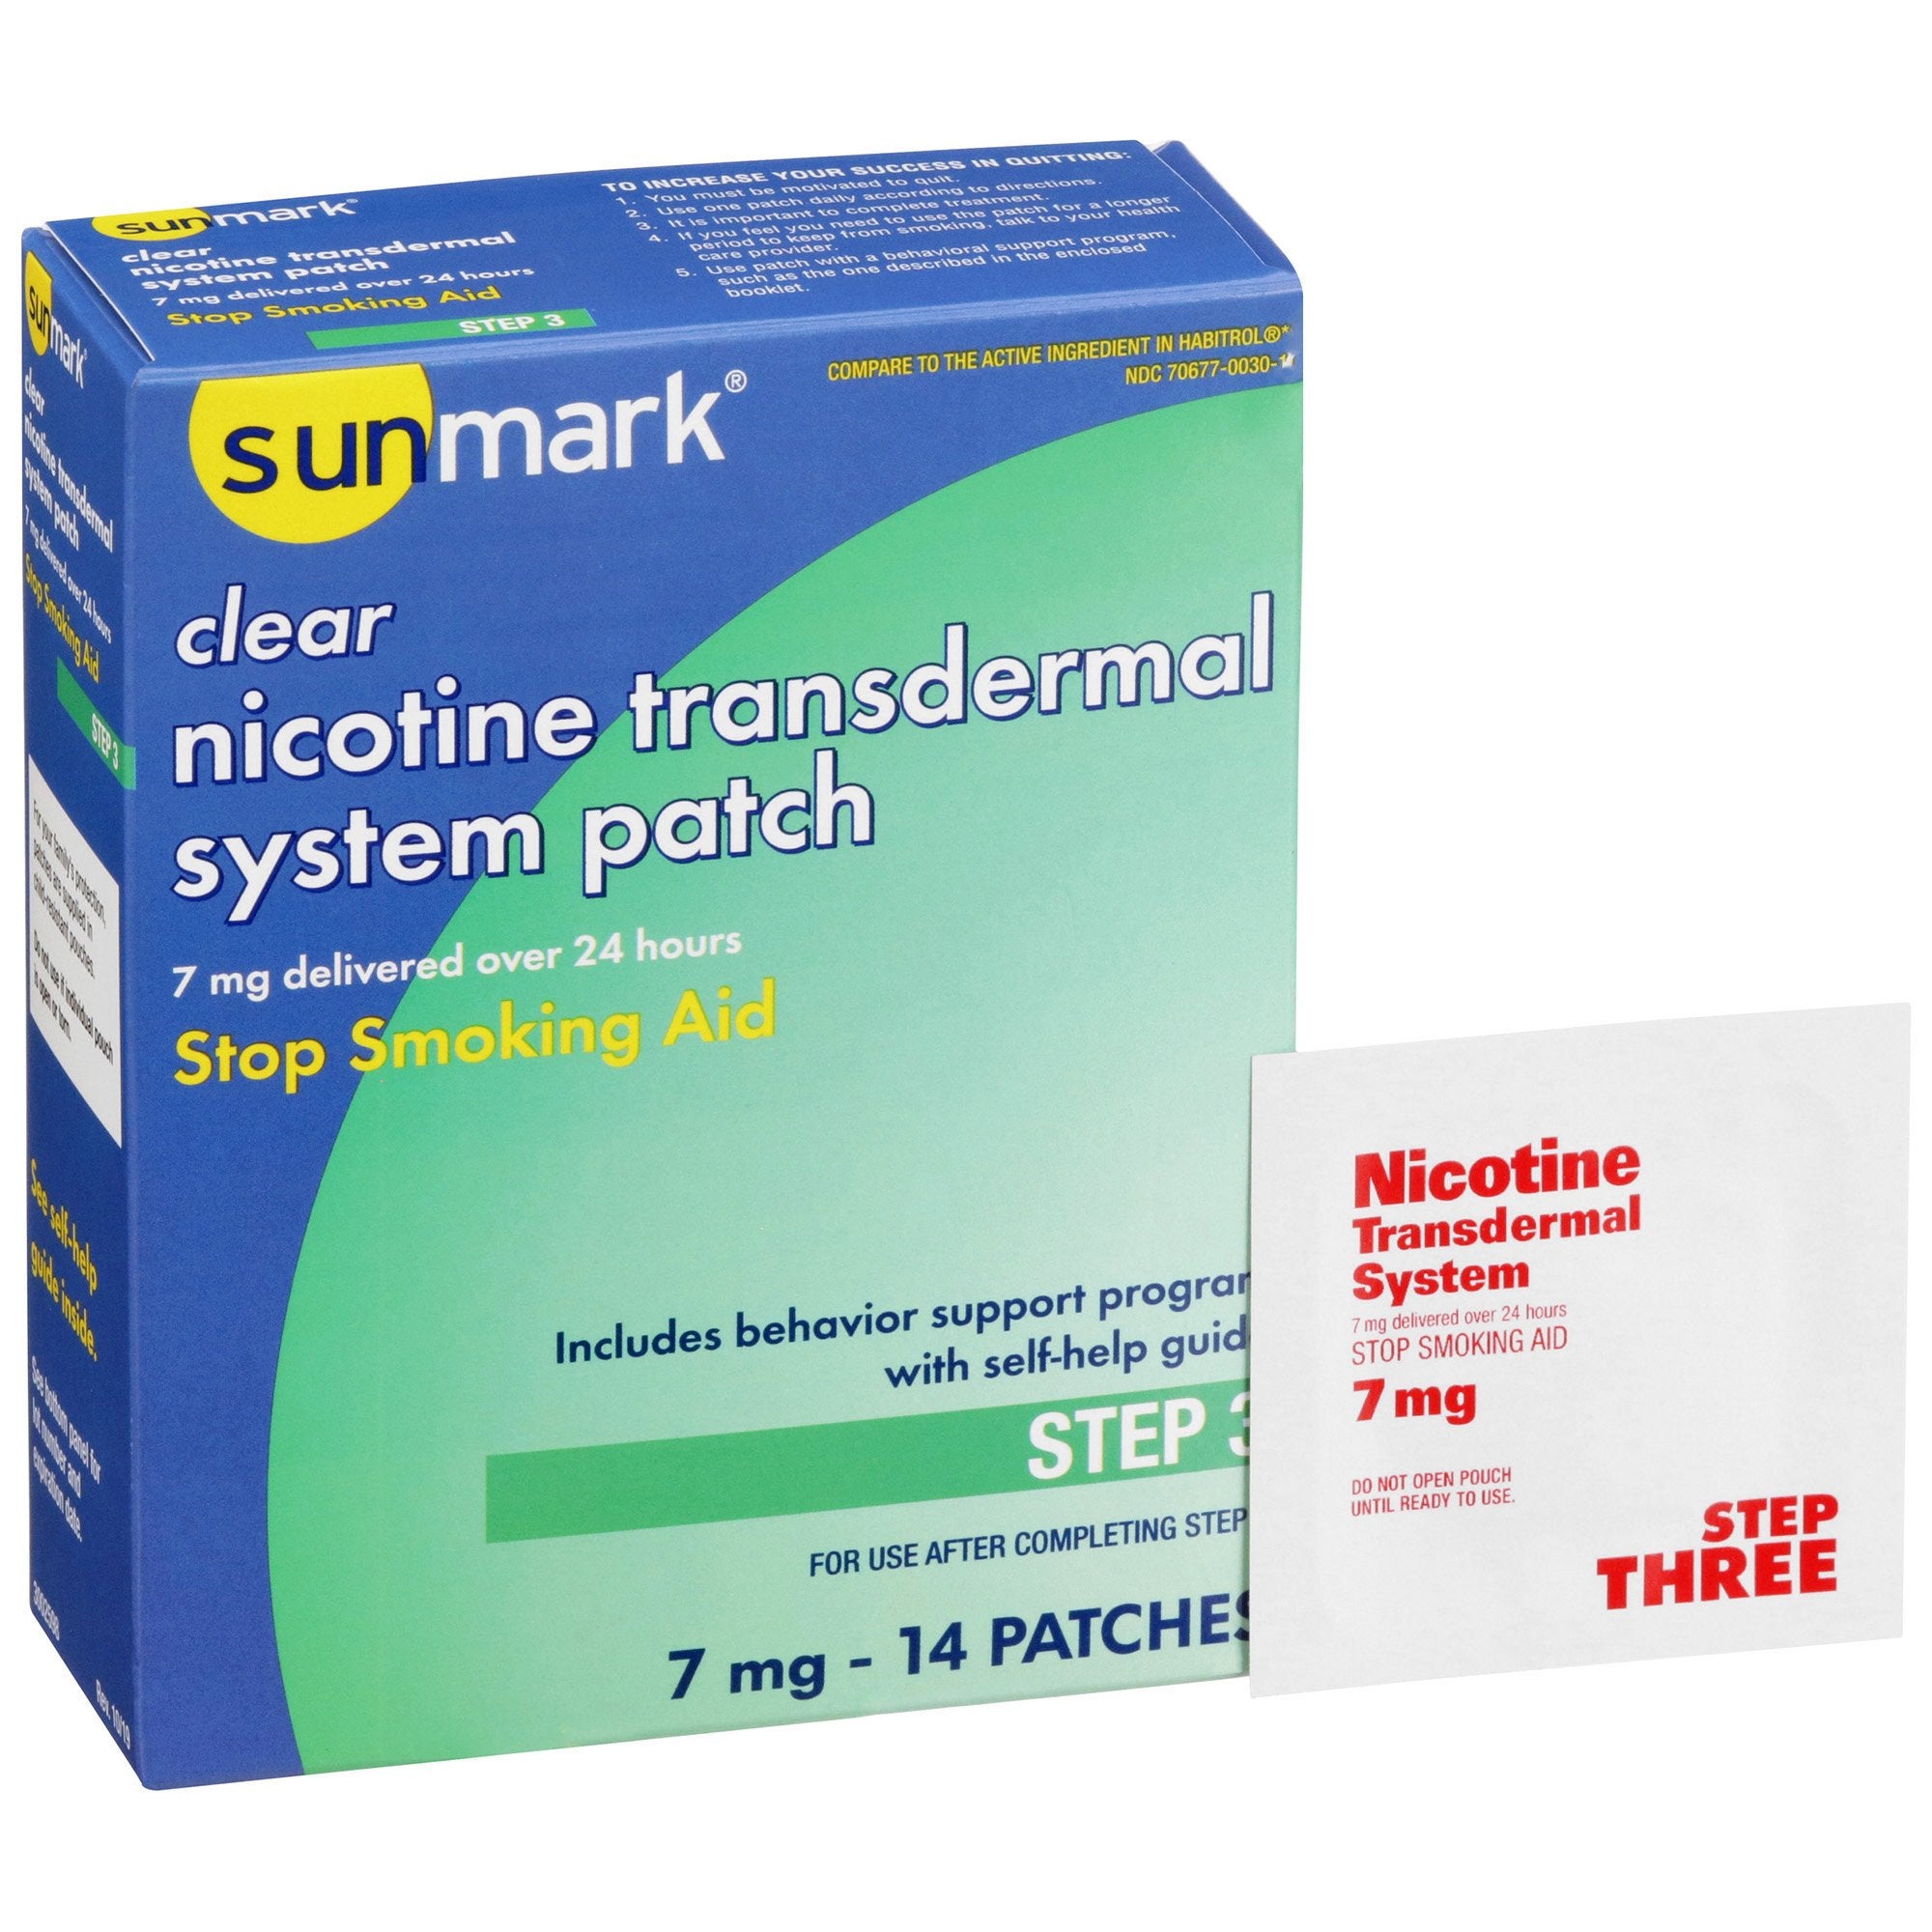 Stop Smoking Aid sunmark 7 mg Strength Transdermal Patch